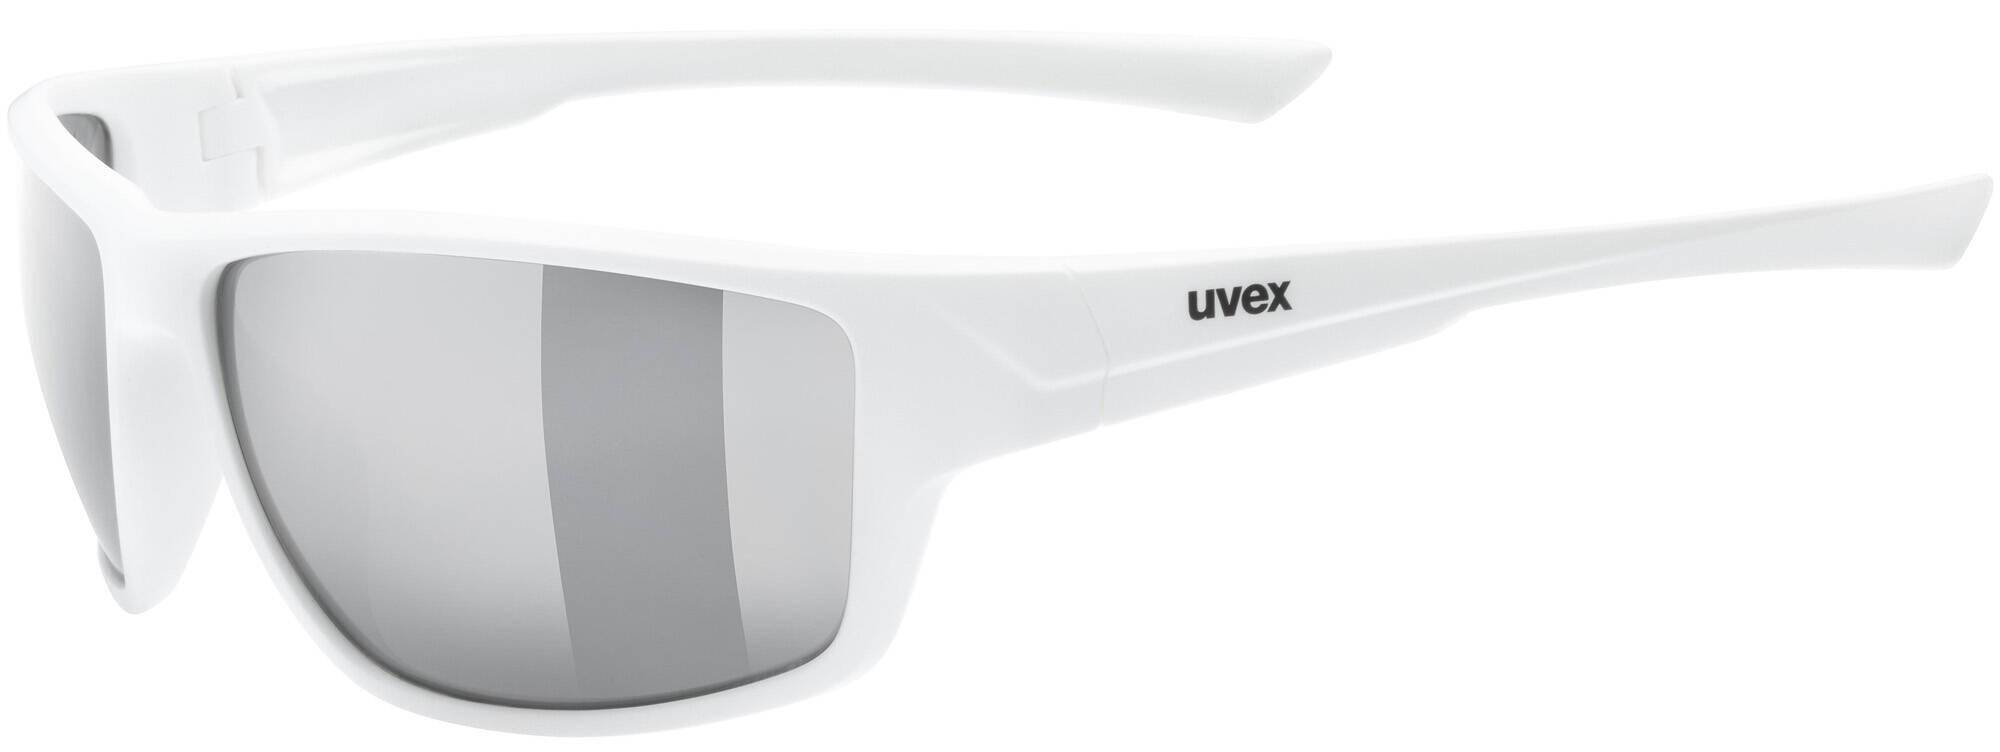 Okulary Uvex Sportstyle 230 białe white (Zdjęcie 4)